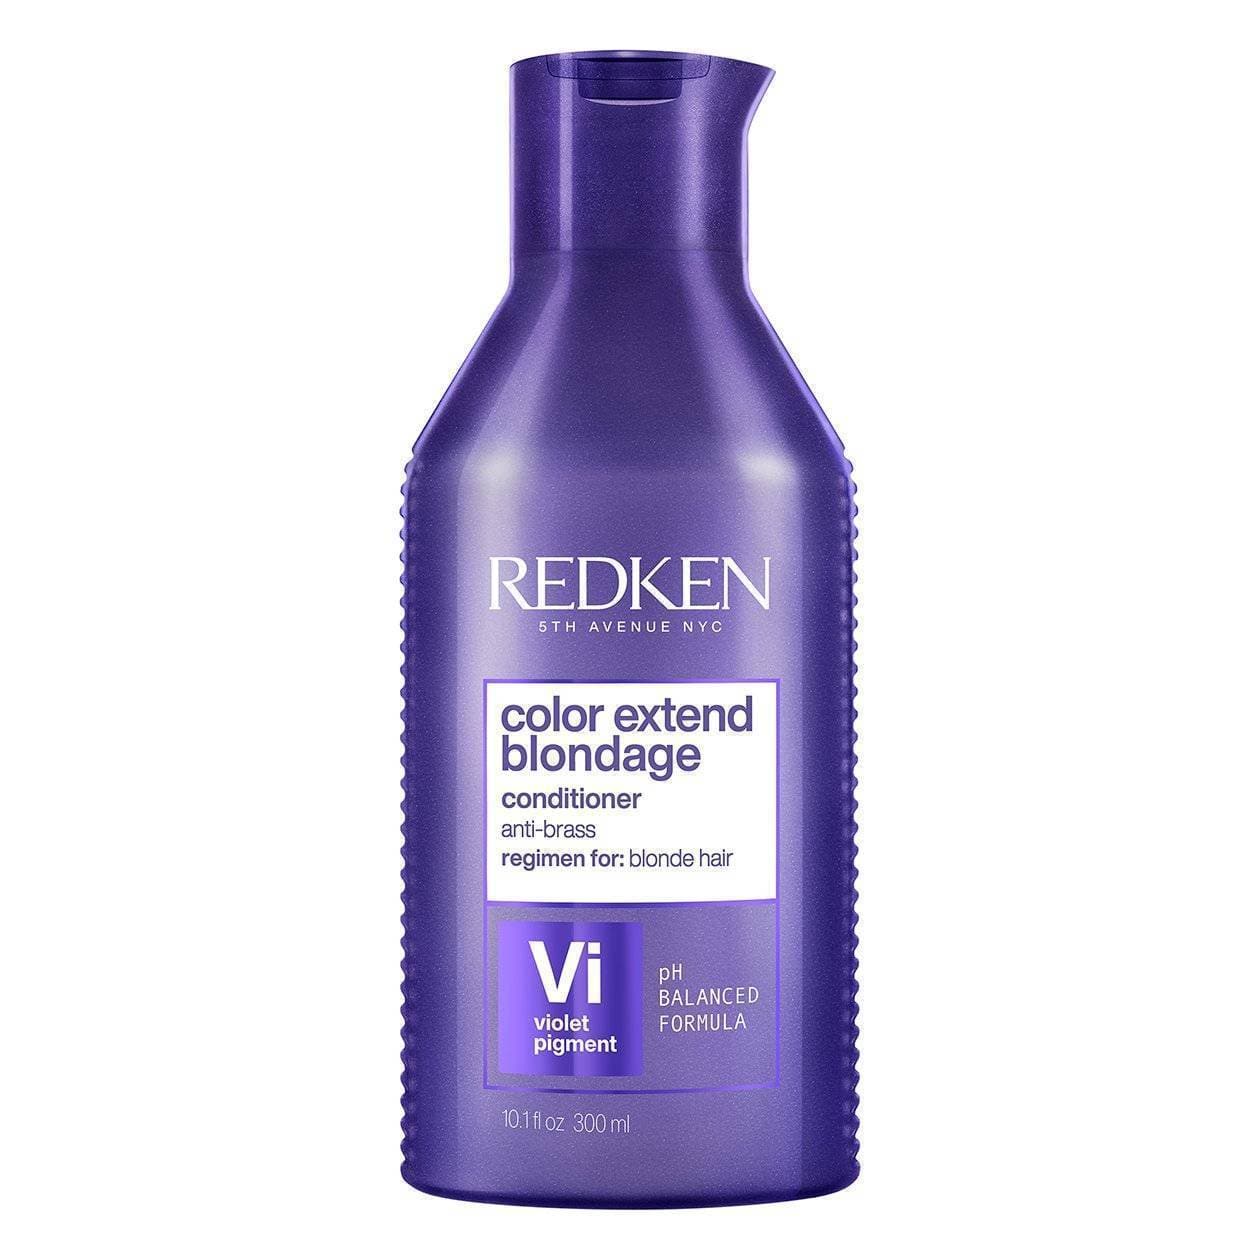 Redken Color Extend Blondage Conditioner 10.1 oz